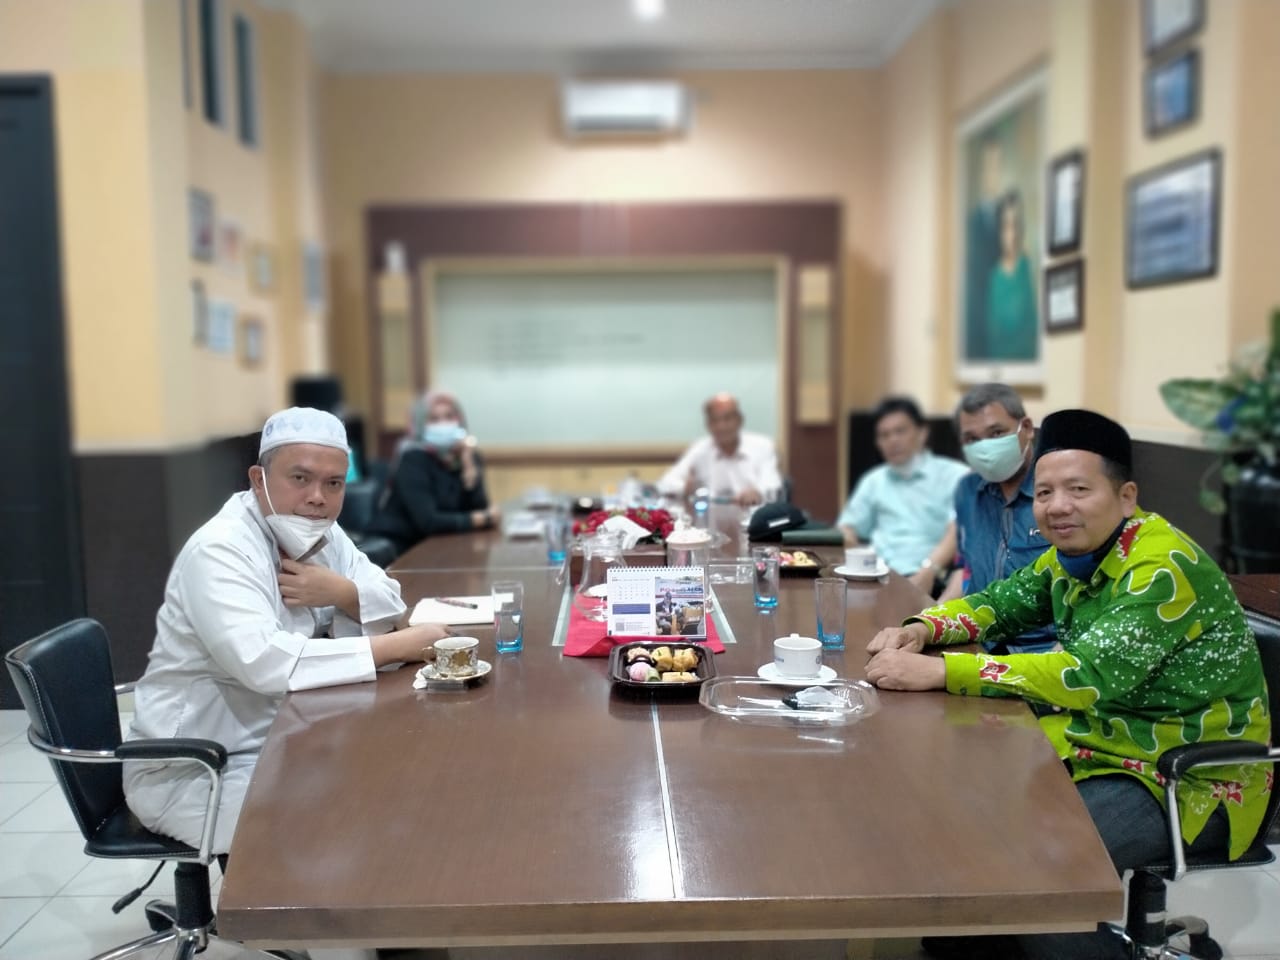 Bersama IIB Darmajaya, Dekopin Lampung Meriahkan Hari Koperasi Ke-74